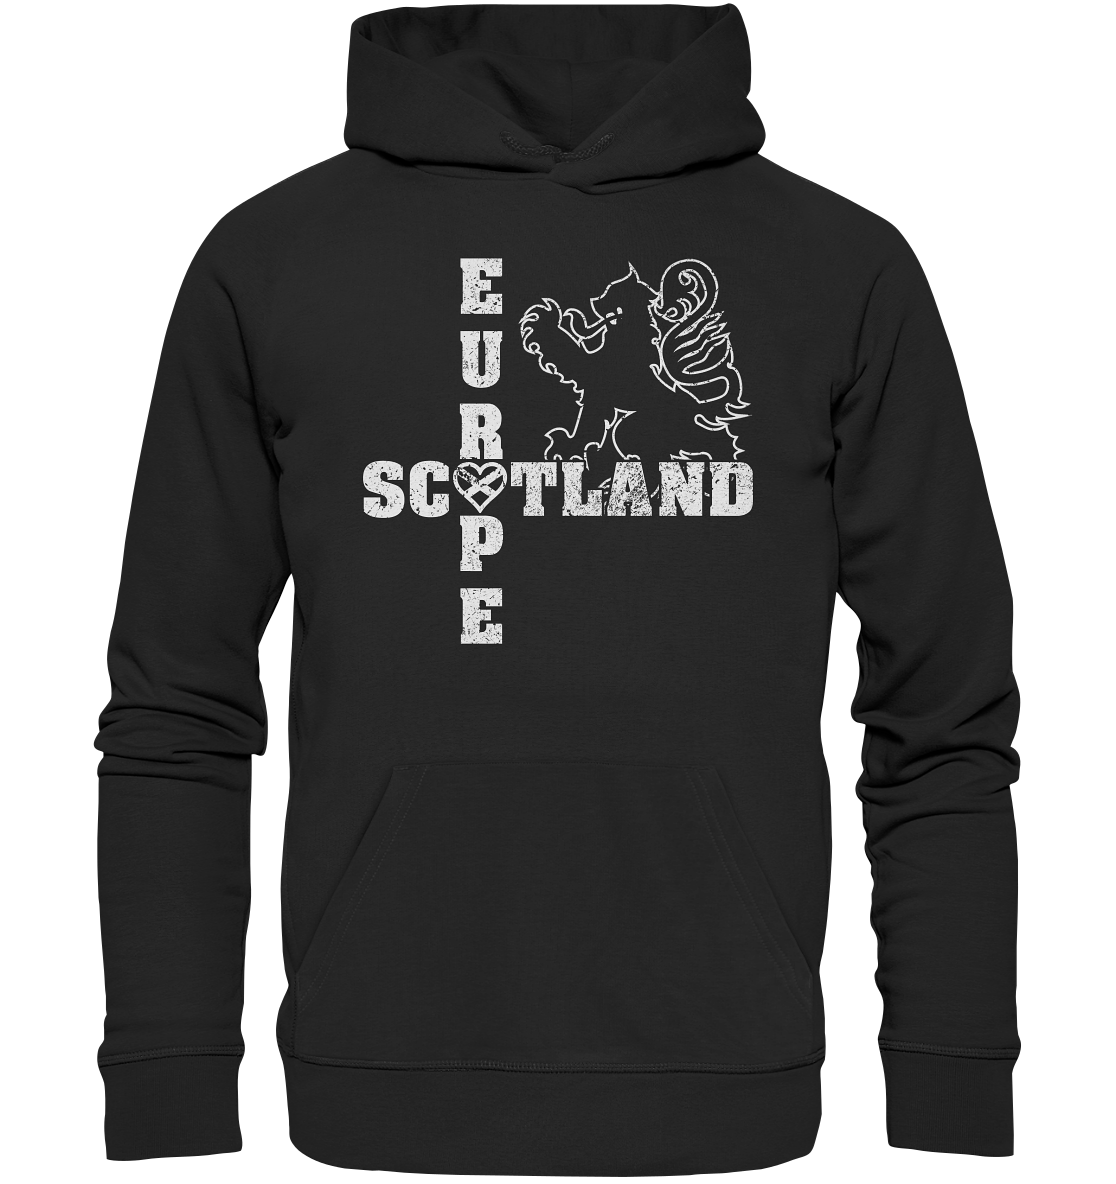 Scotland "Europe" - Premium Unisex Hoodie